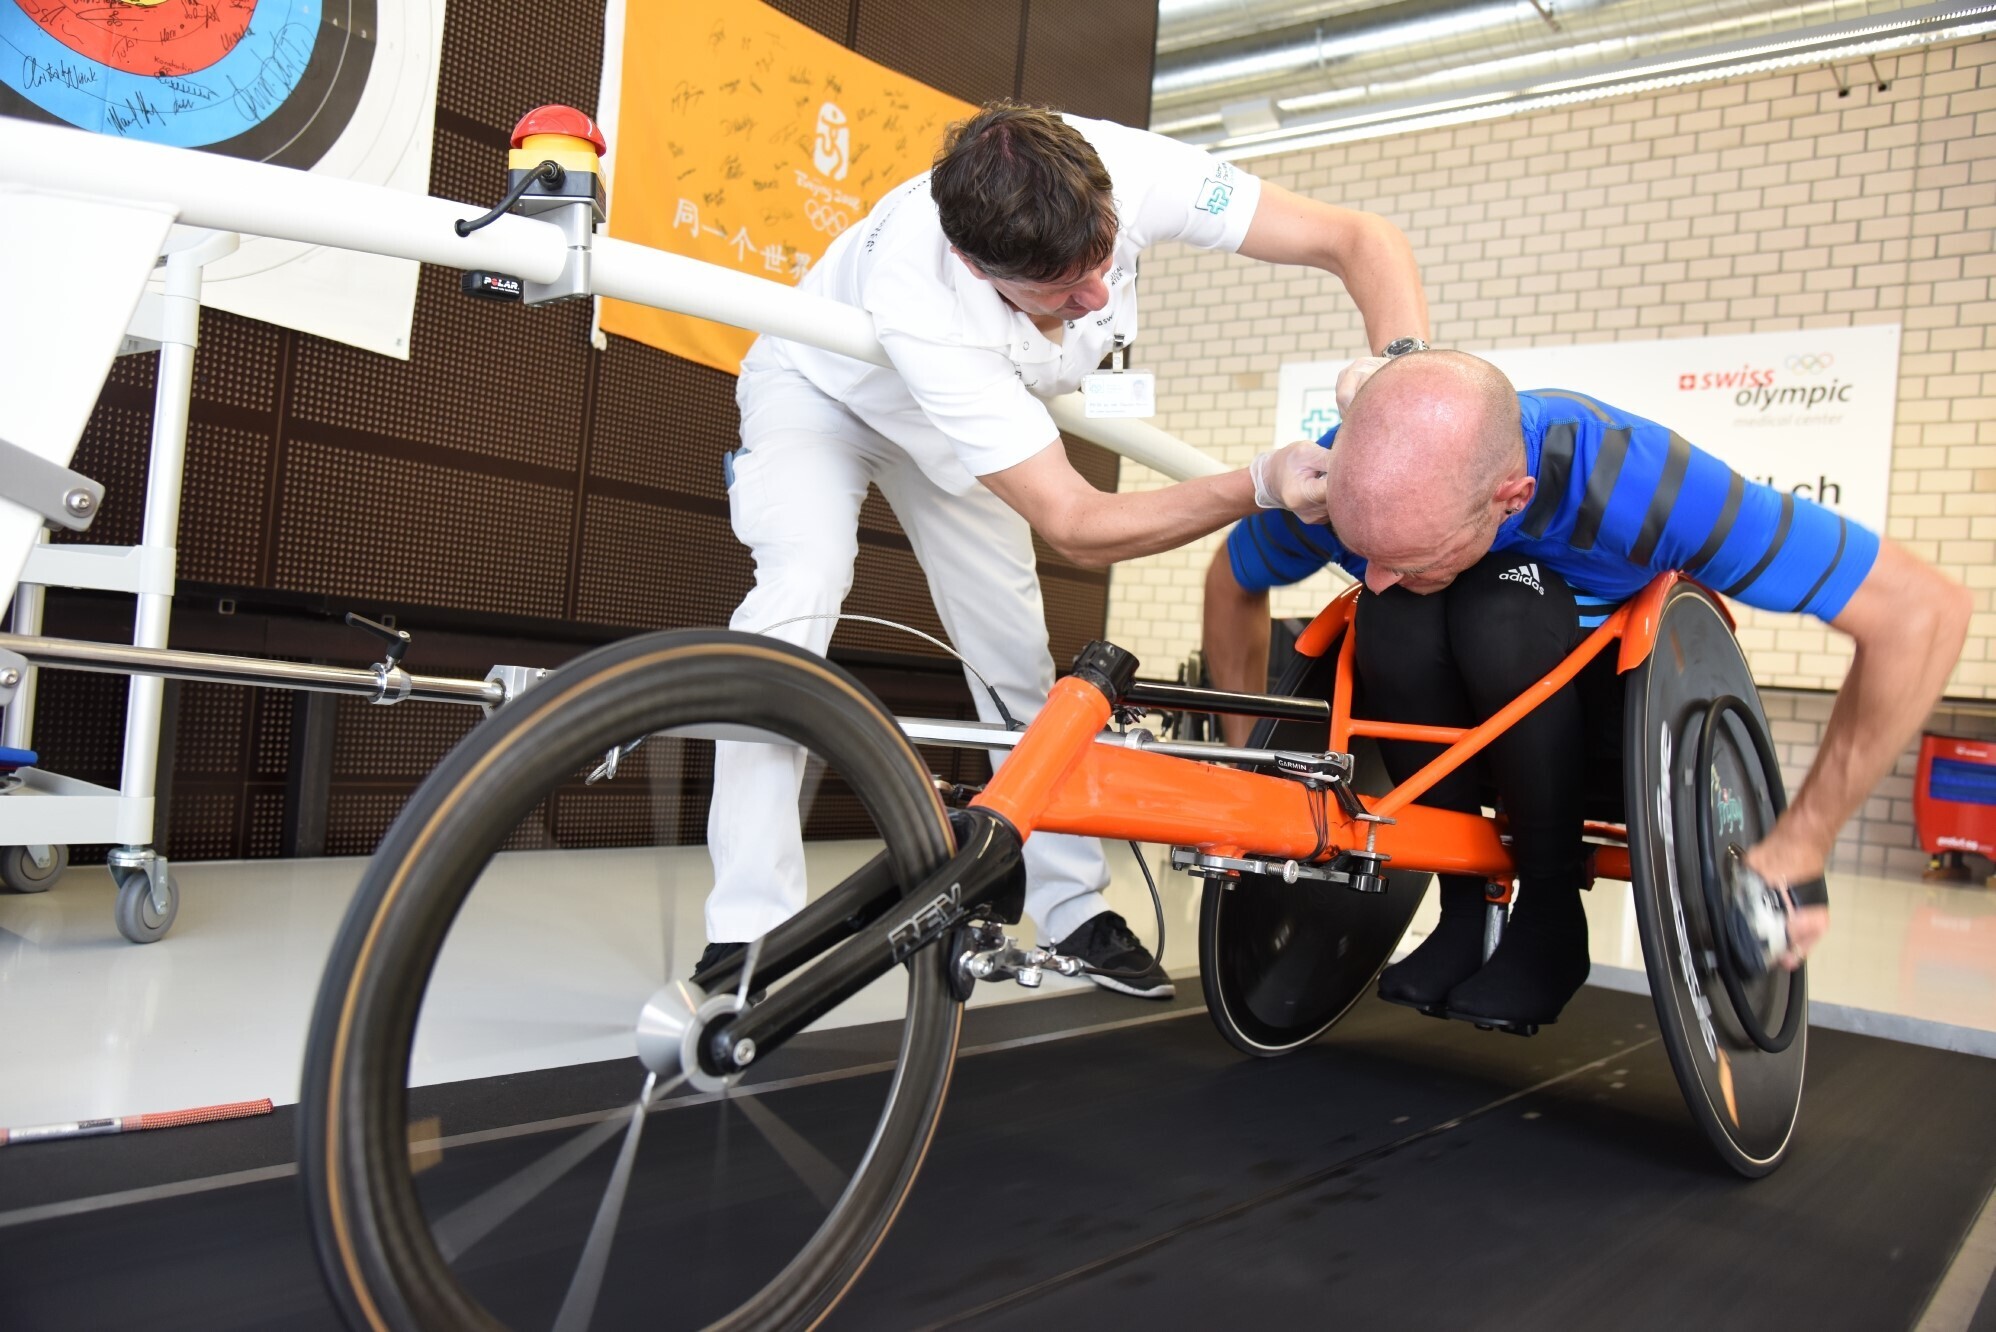 Ein Mann in einem Rennrollstuhl auf einem Laufband. Neben ihm beugt sich Claudio Perret vor, um ein Messgerät am Ohr des Mannes zu befestigen. Sie befinden sich in einem Sportlabor.